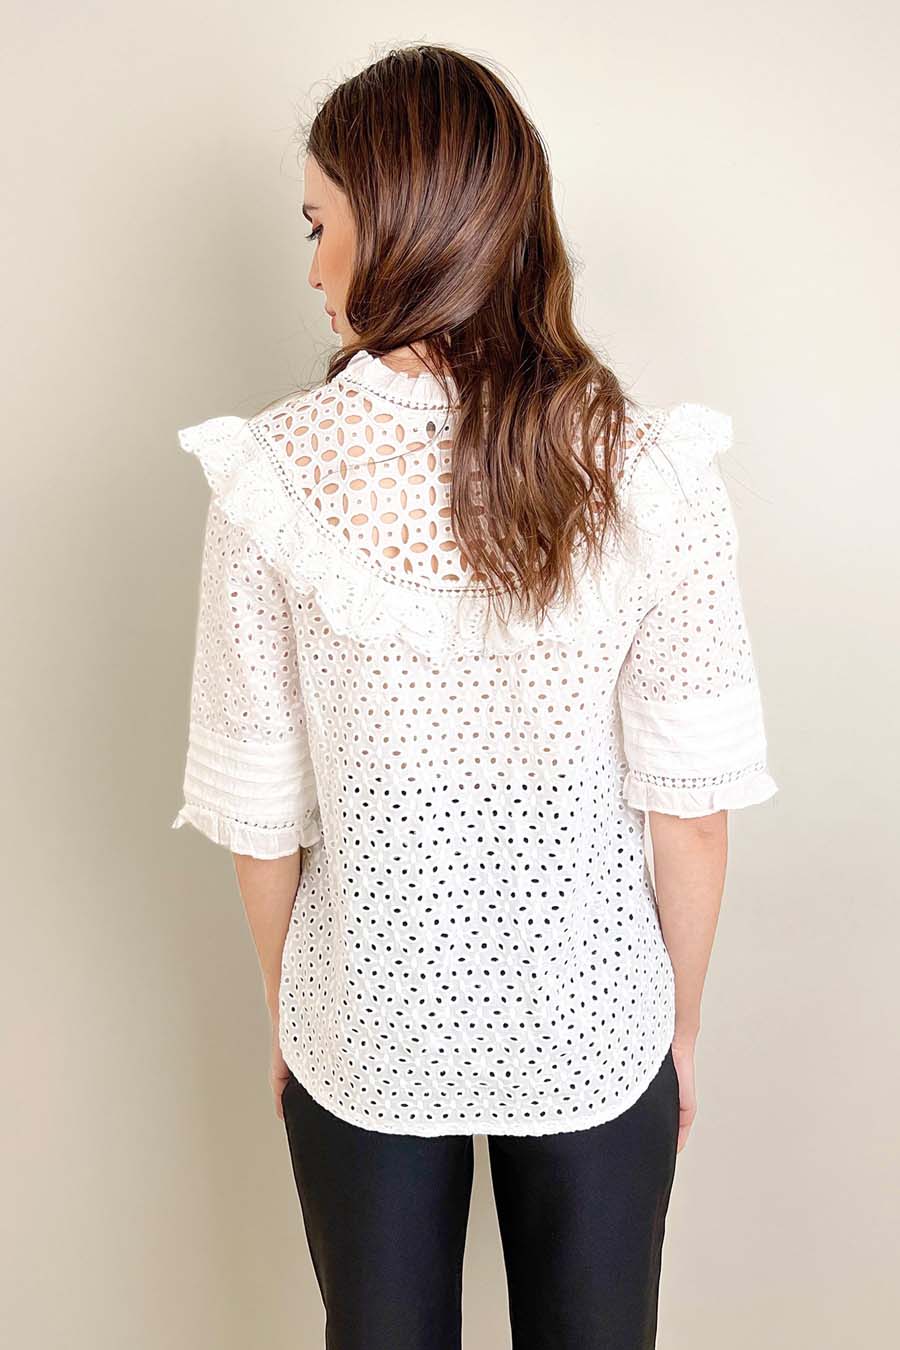 Γυναικείο πουκάμισο Alinta, Λευκό 4